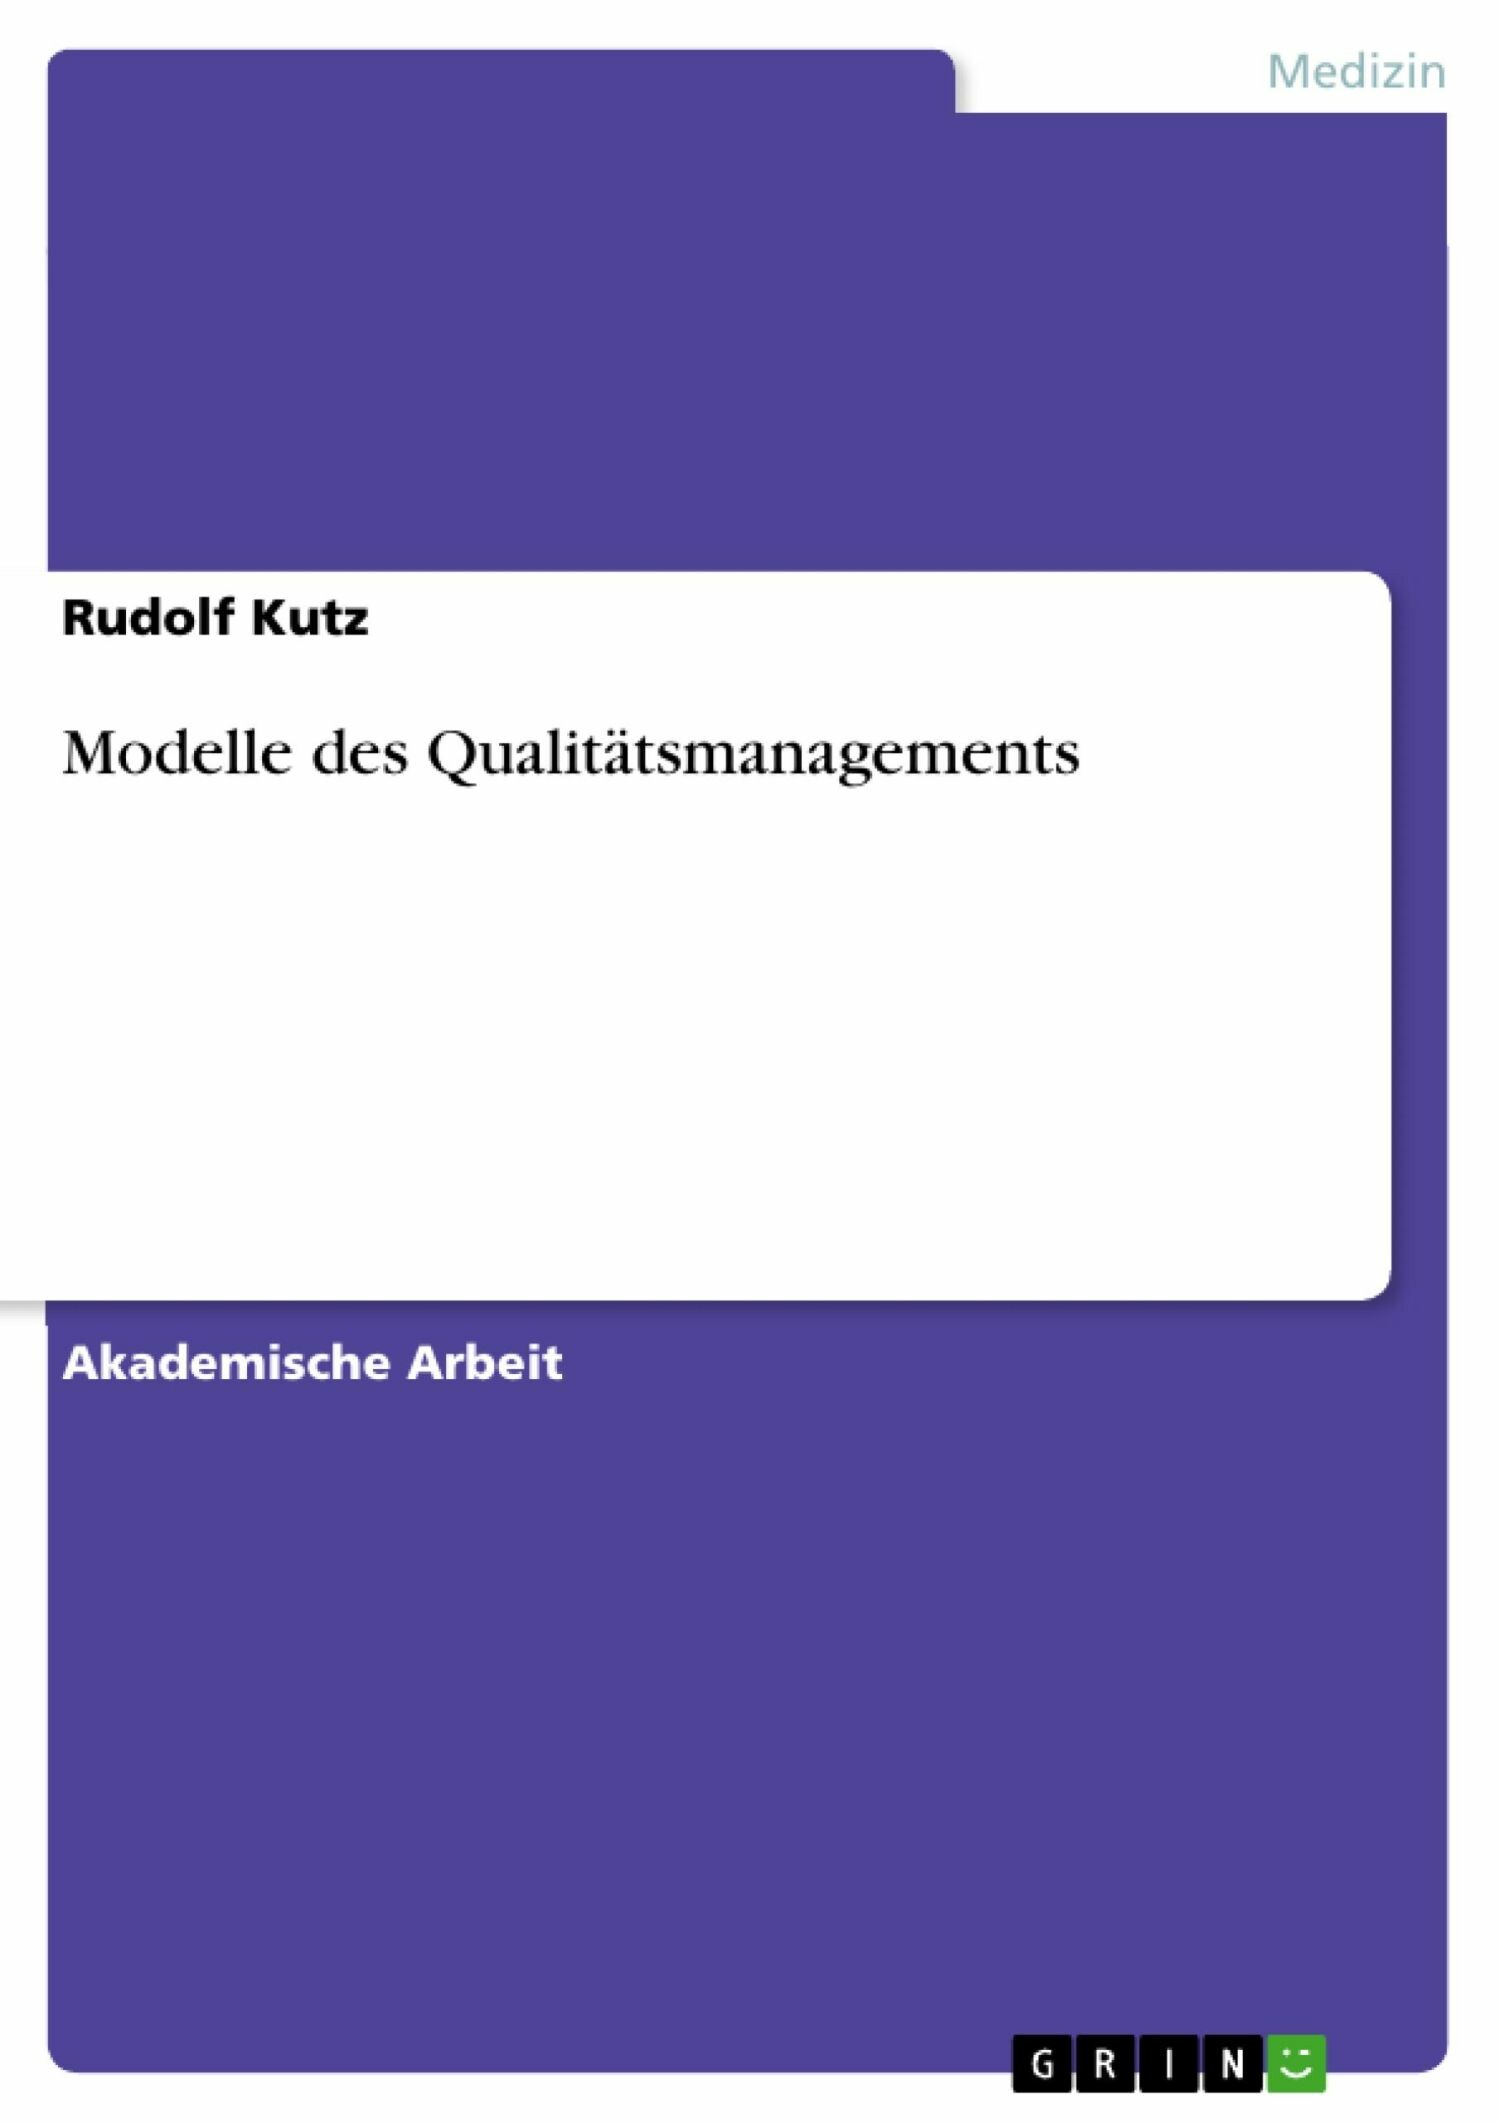 Modelle des Qualitätsmanagements